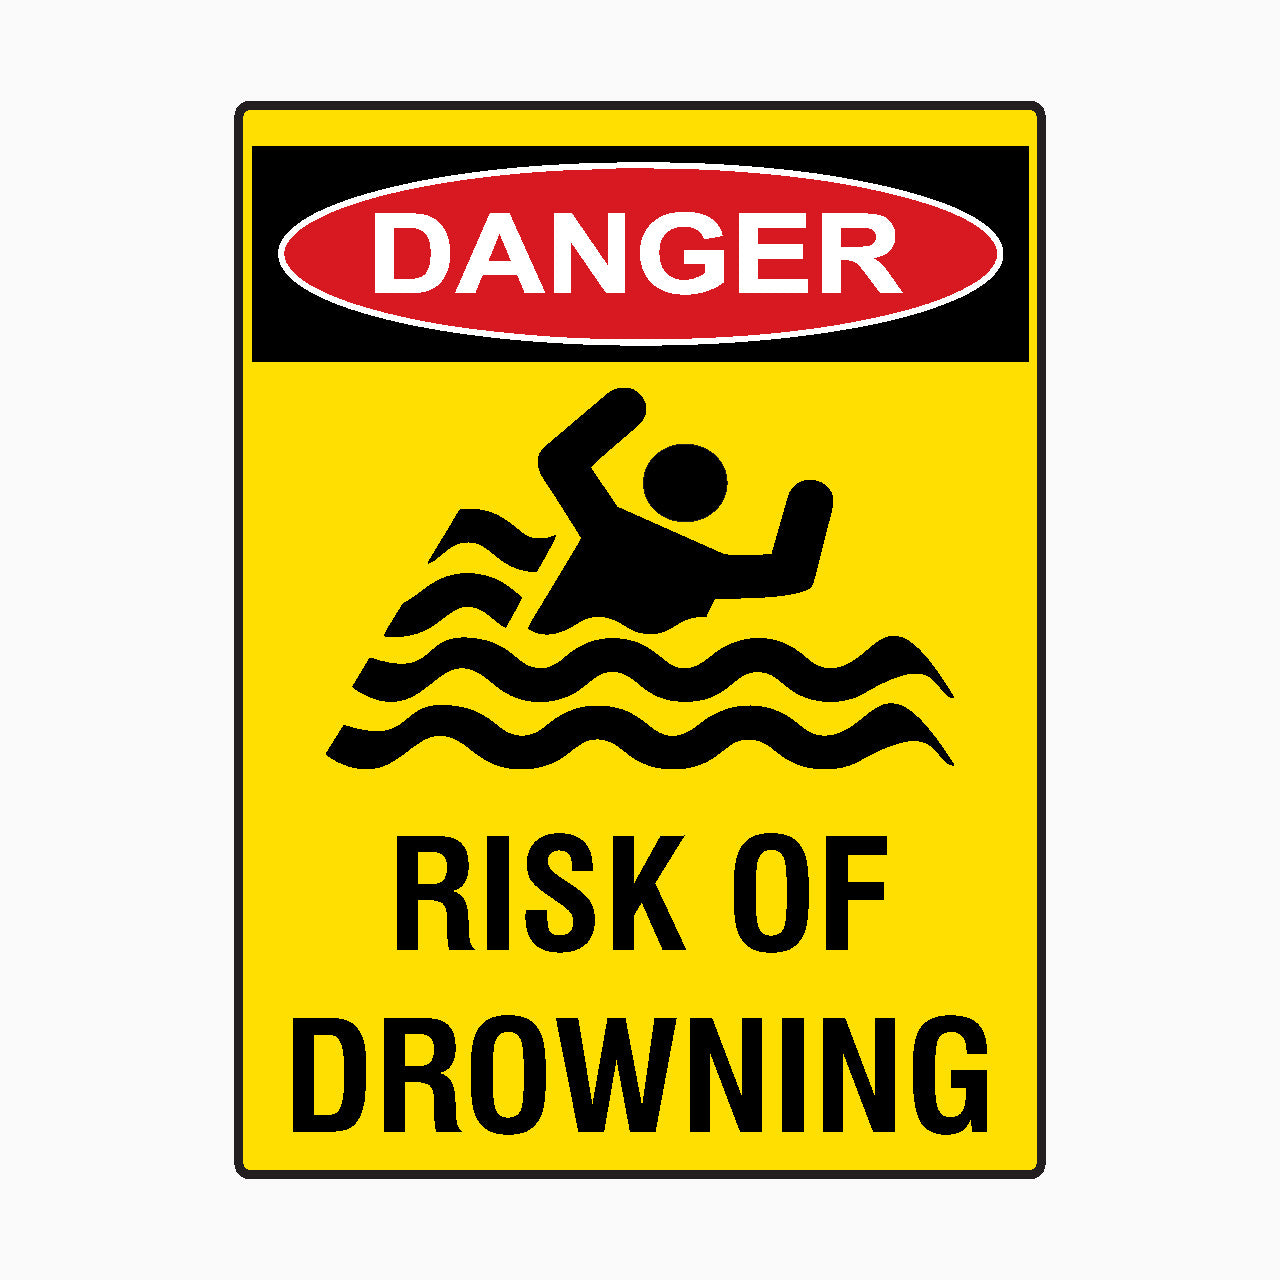 DANGER SIGN - RISK OF DROWNING SIGN